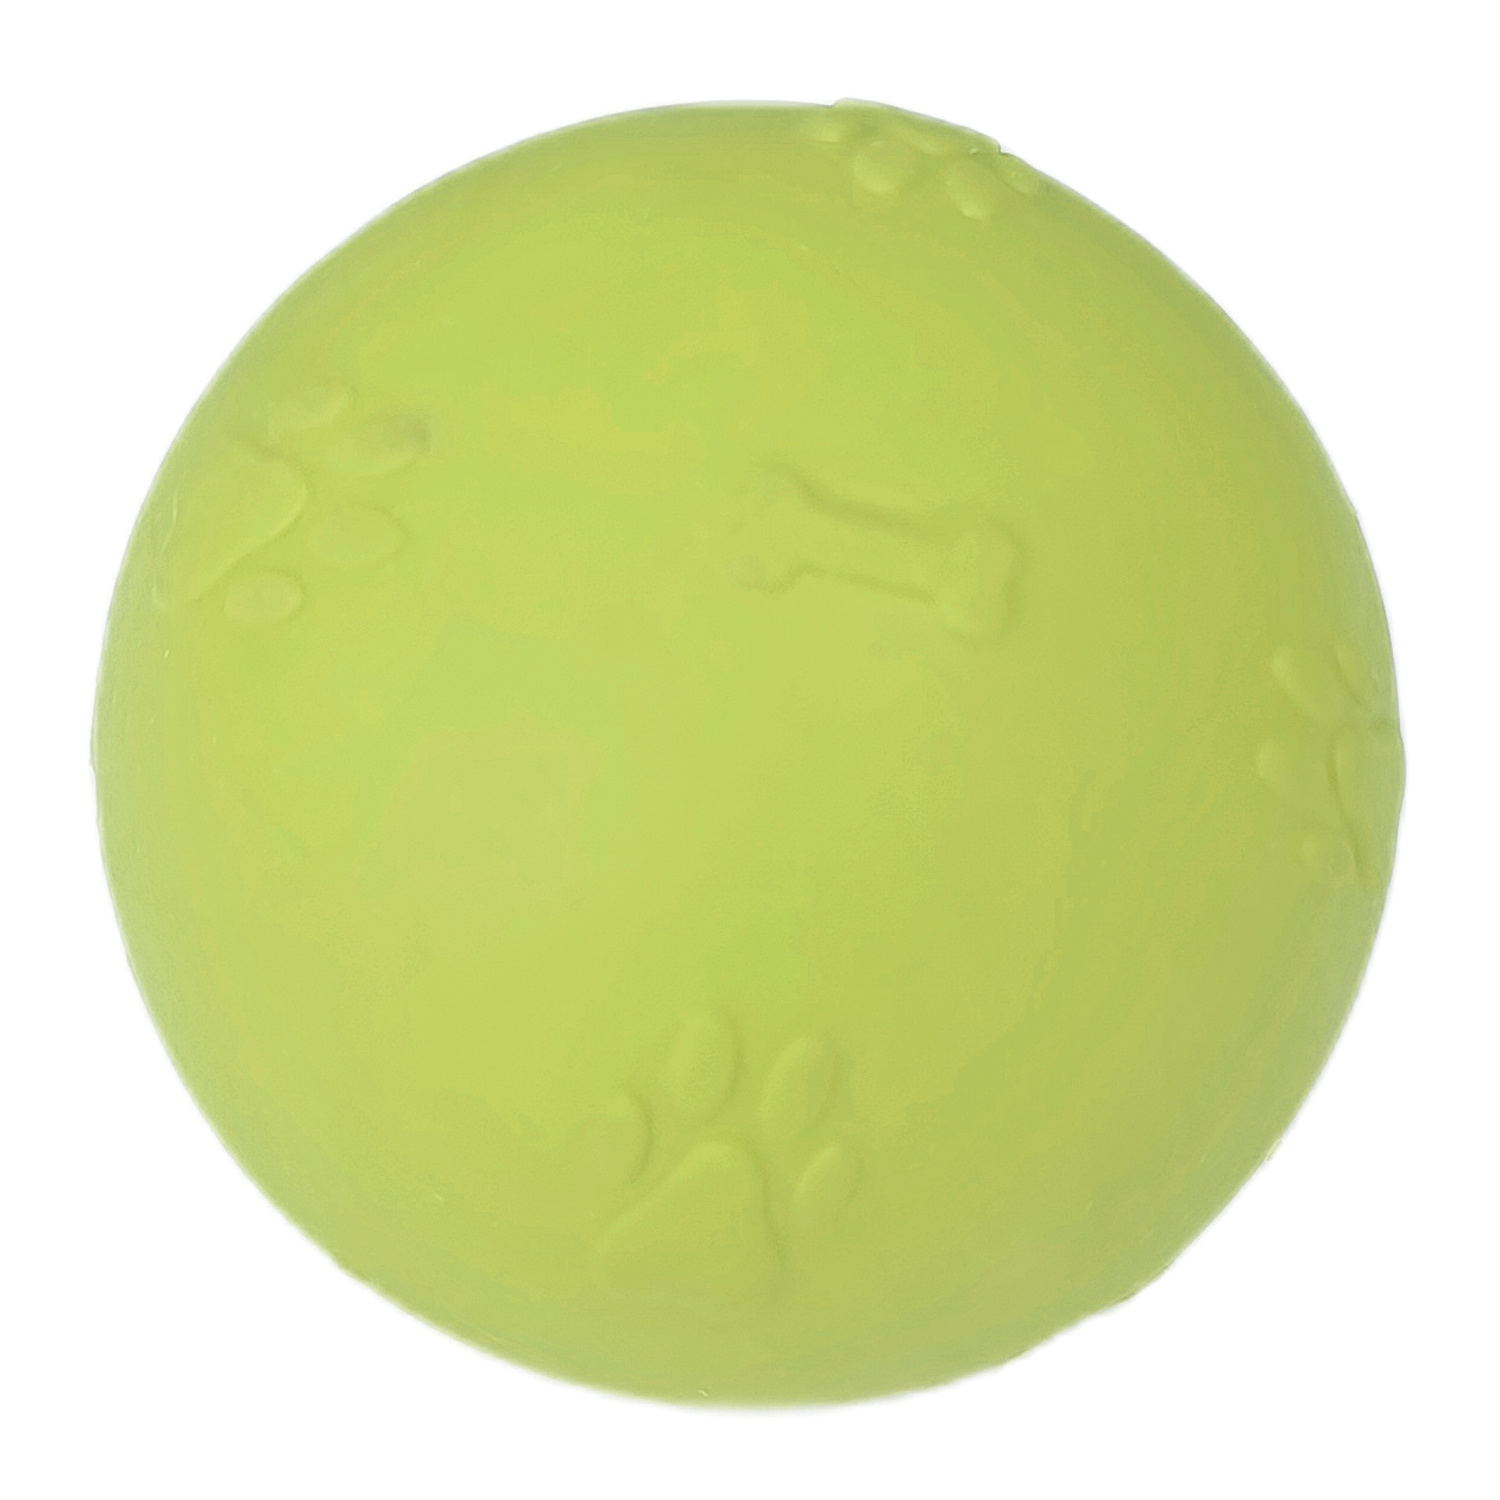 CLZ205 Pati Desenli Sert Köpek Oyun Topu 7 cm Medium Sarı